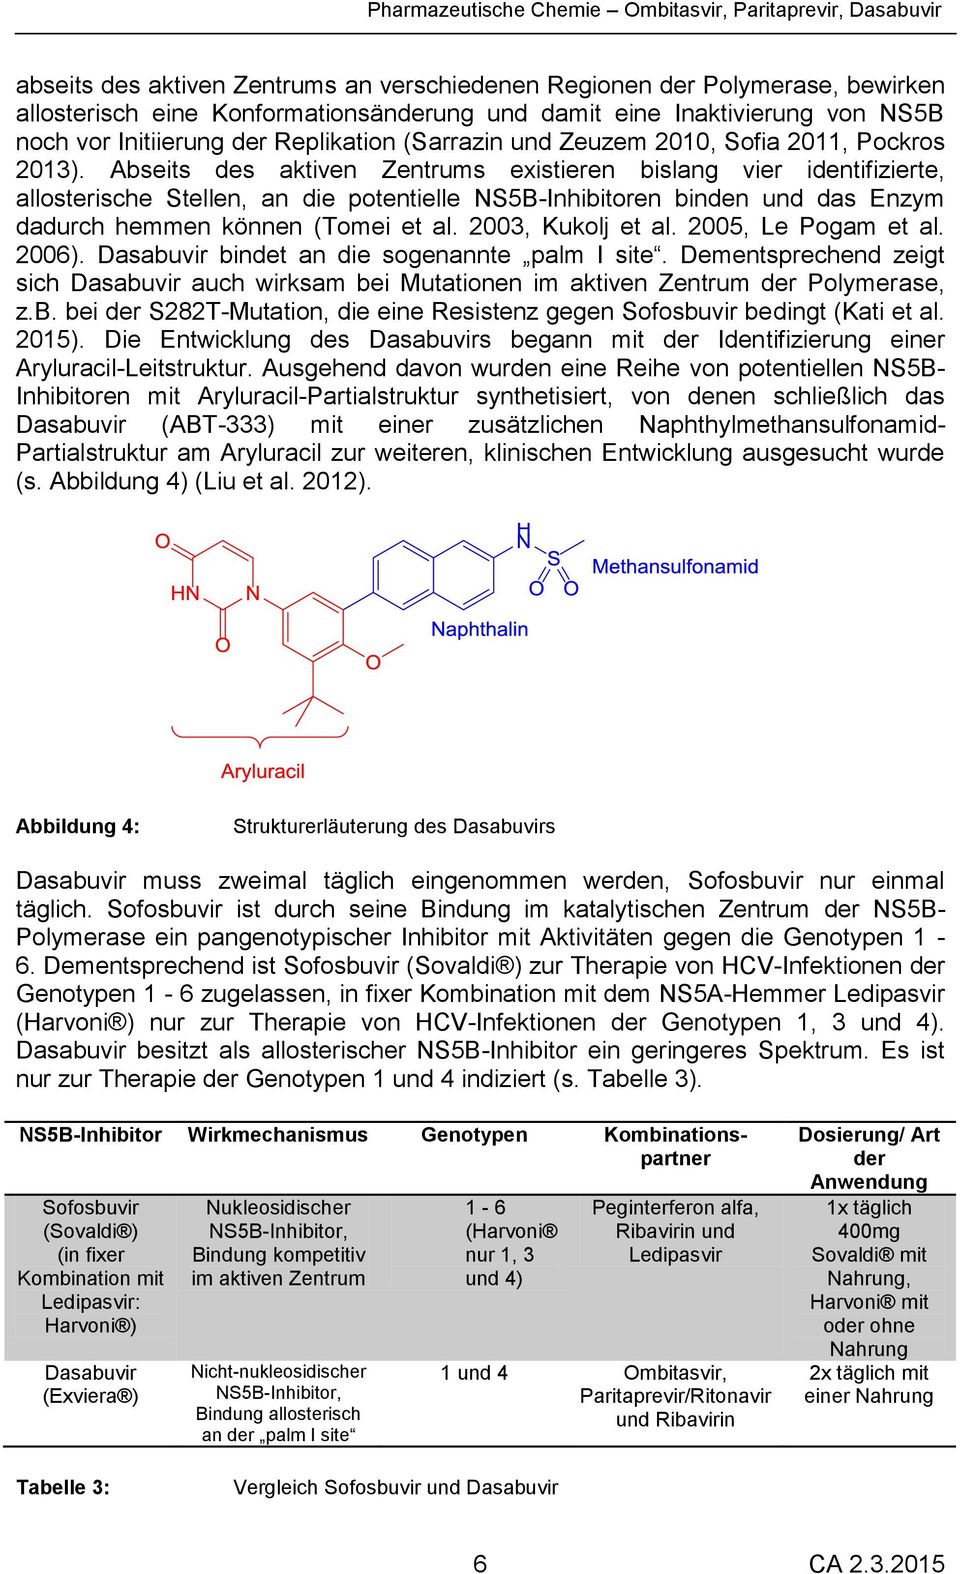 Abseits des aktiven Zentrums existieren bislang vier identifizierte, allosterische Stellen, an die potentielle NS5B-Inhibitoren binden und das Enzym dadurch hemmen können (Tomei et al.